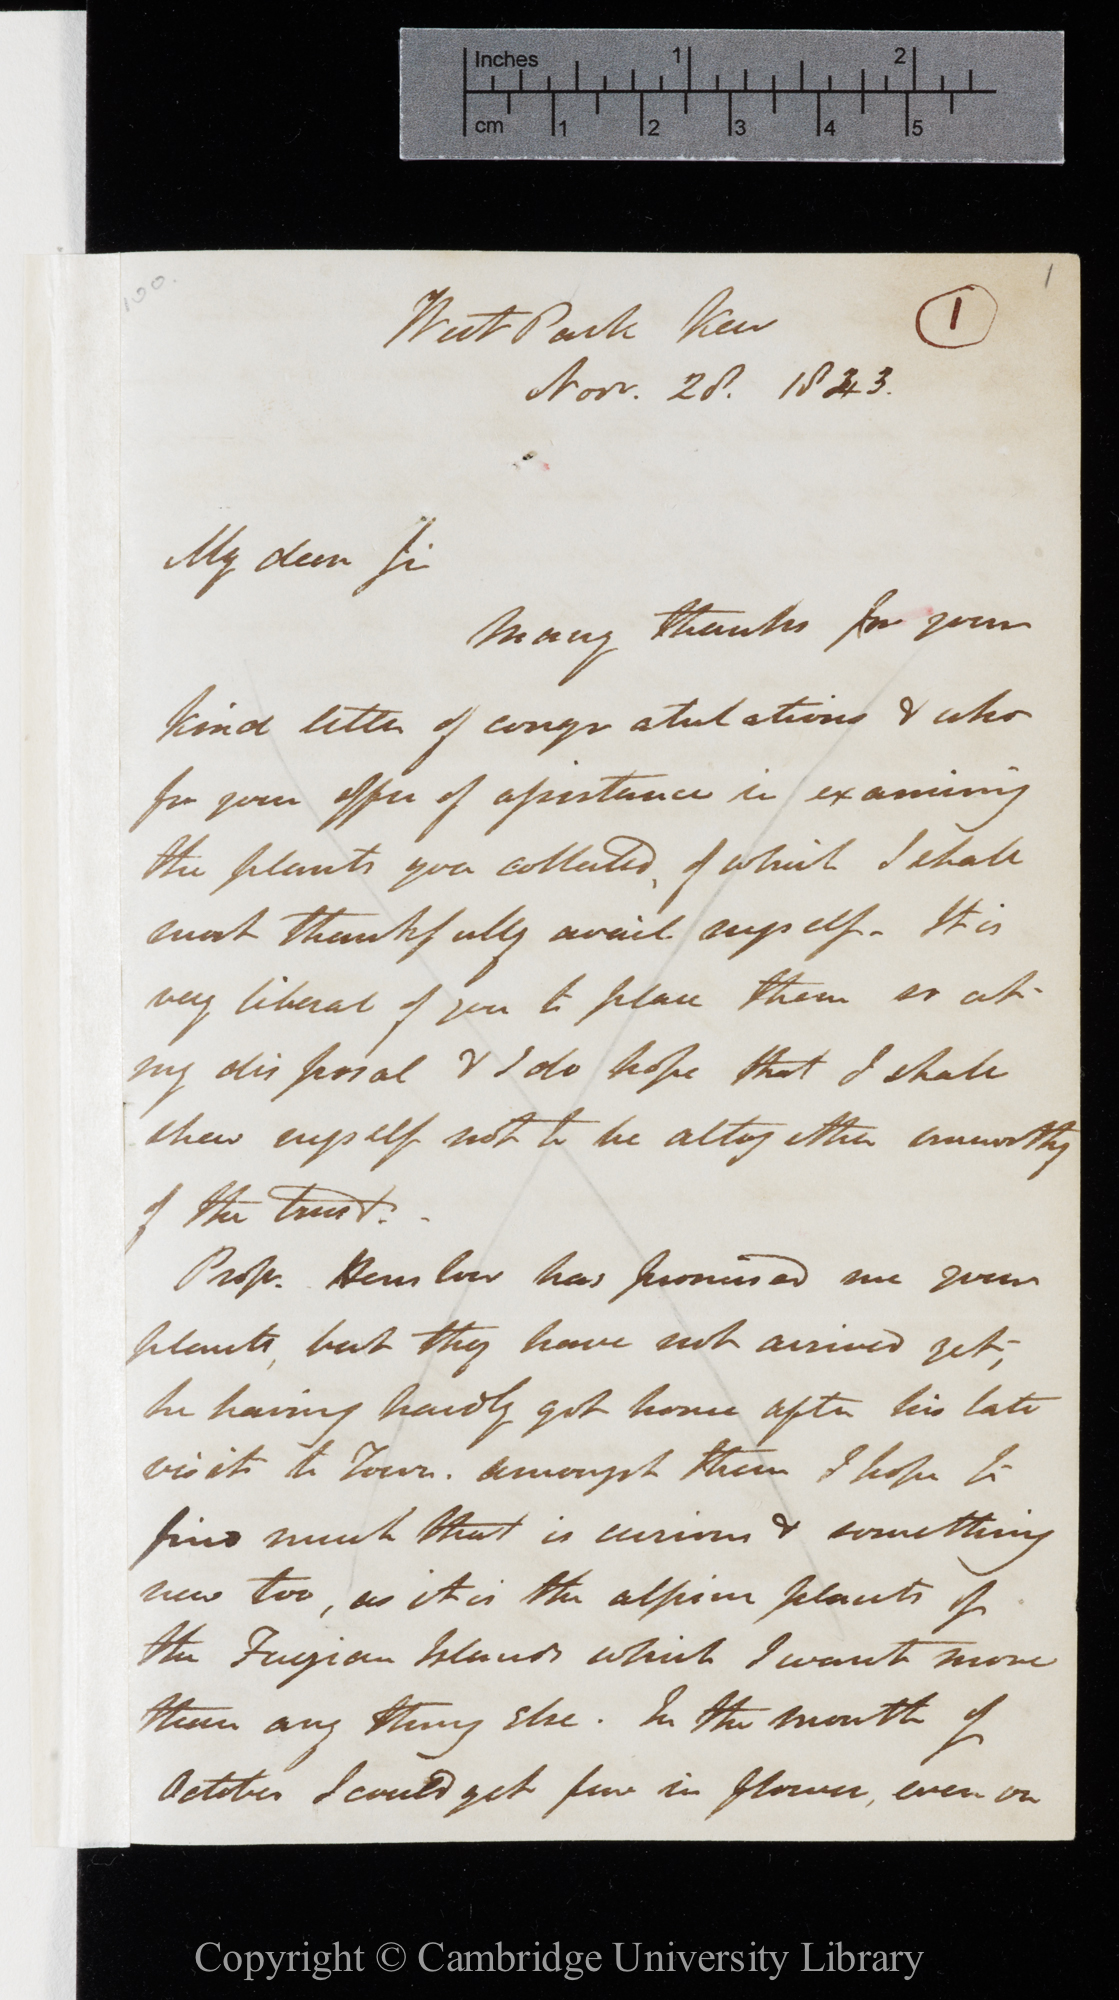 Letter from J. D. Hooker to C. R. Darwin   28 November 1843